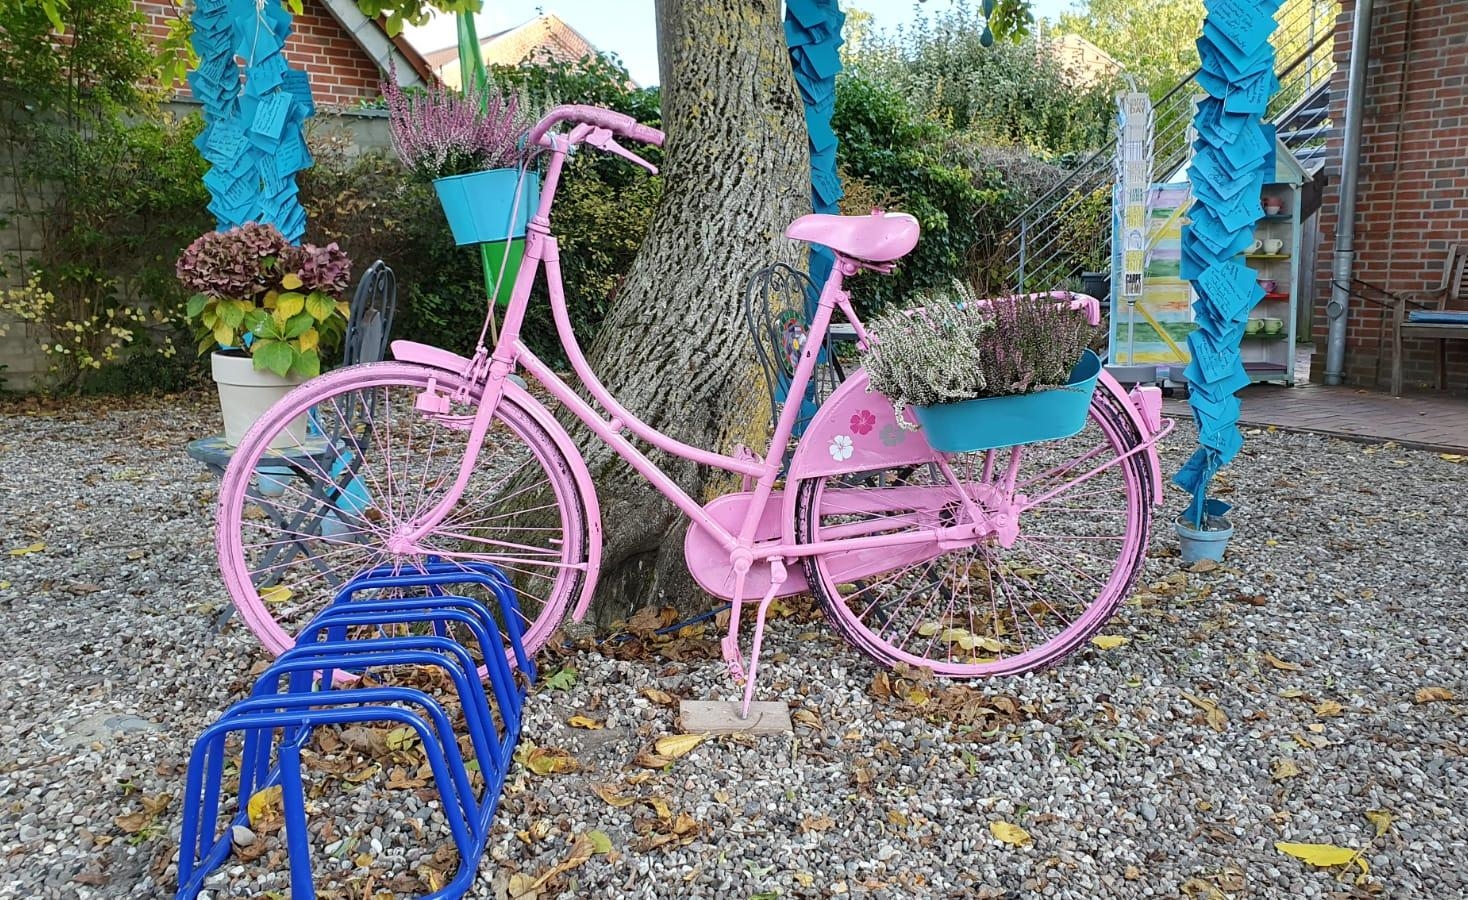 Neues Fahrradmotiv entdeckt ☺ Pink Lady im Herbstlook #Fahrrad #Deko #Herbst